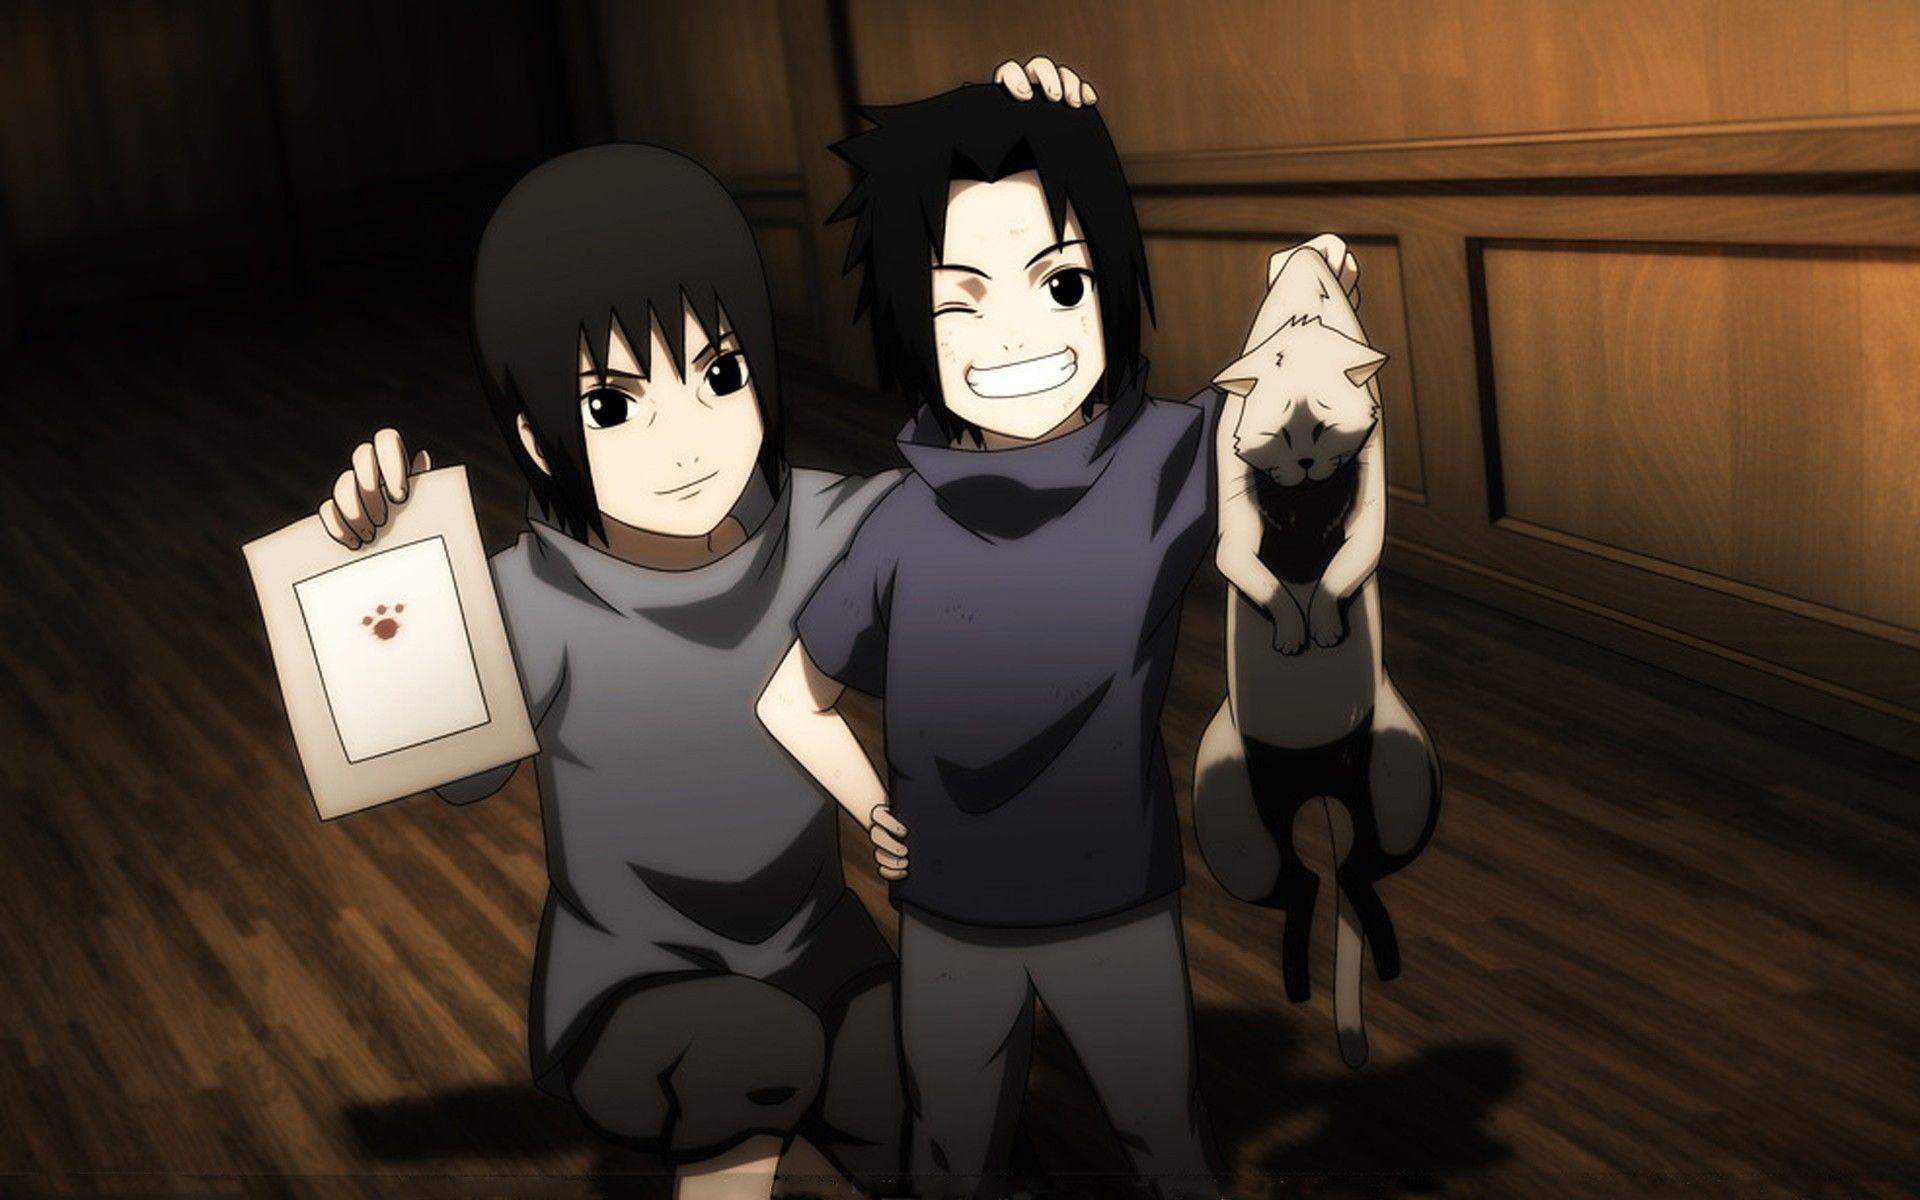 Cats Uchiha Sasuke Naruto: Shippuden Uchiha Itachi anime anime boys paws brothers children wallpaperx1200